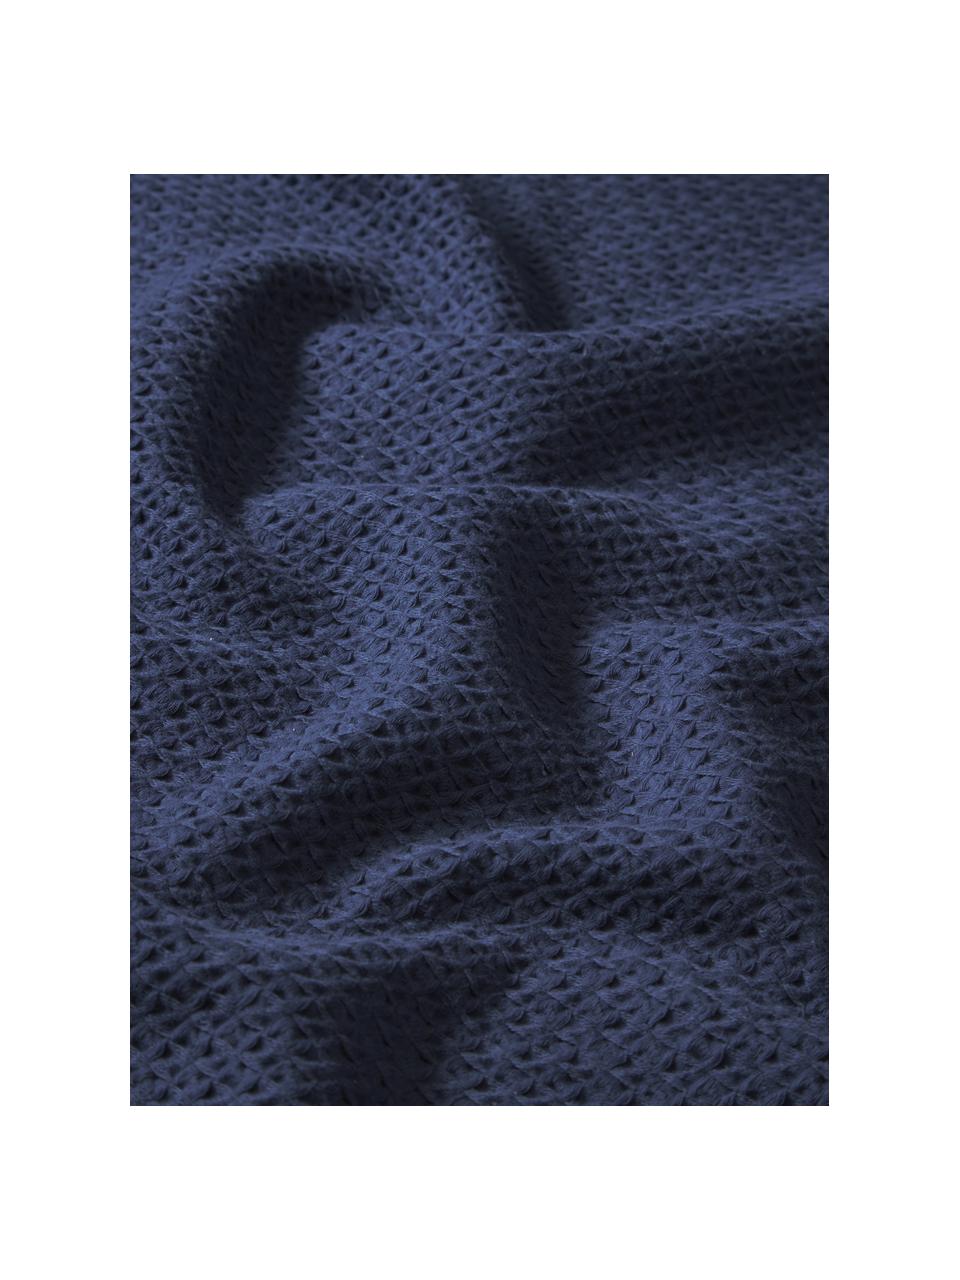 Přehoz z vaflového piké Levana, 100 % bavlna

Materiál použitý v tomto produktu byl testován na škodlivé látky a certifikován podle OEKO-TEX Standard 100 - Textile by OEKO-TEX®, CITEVE, 5763CIT., Tmavě modrá, Š 180 cm, D 250 cm